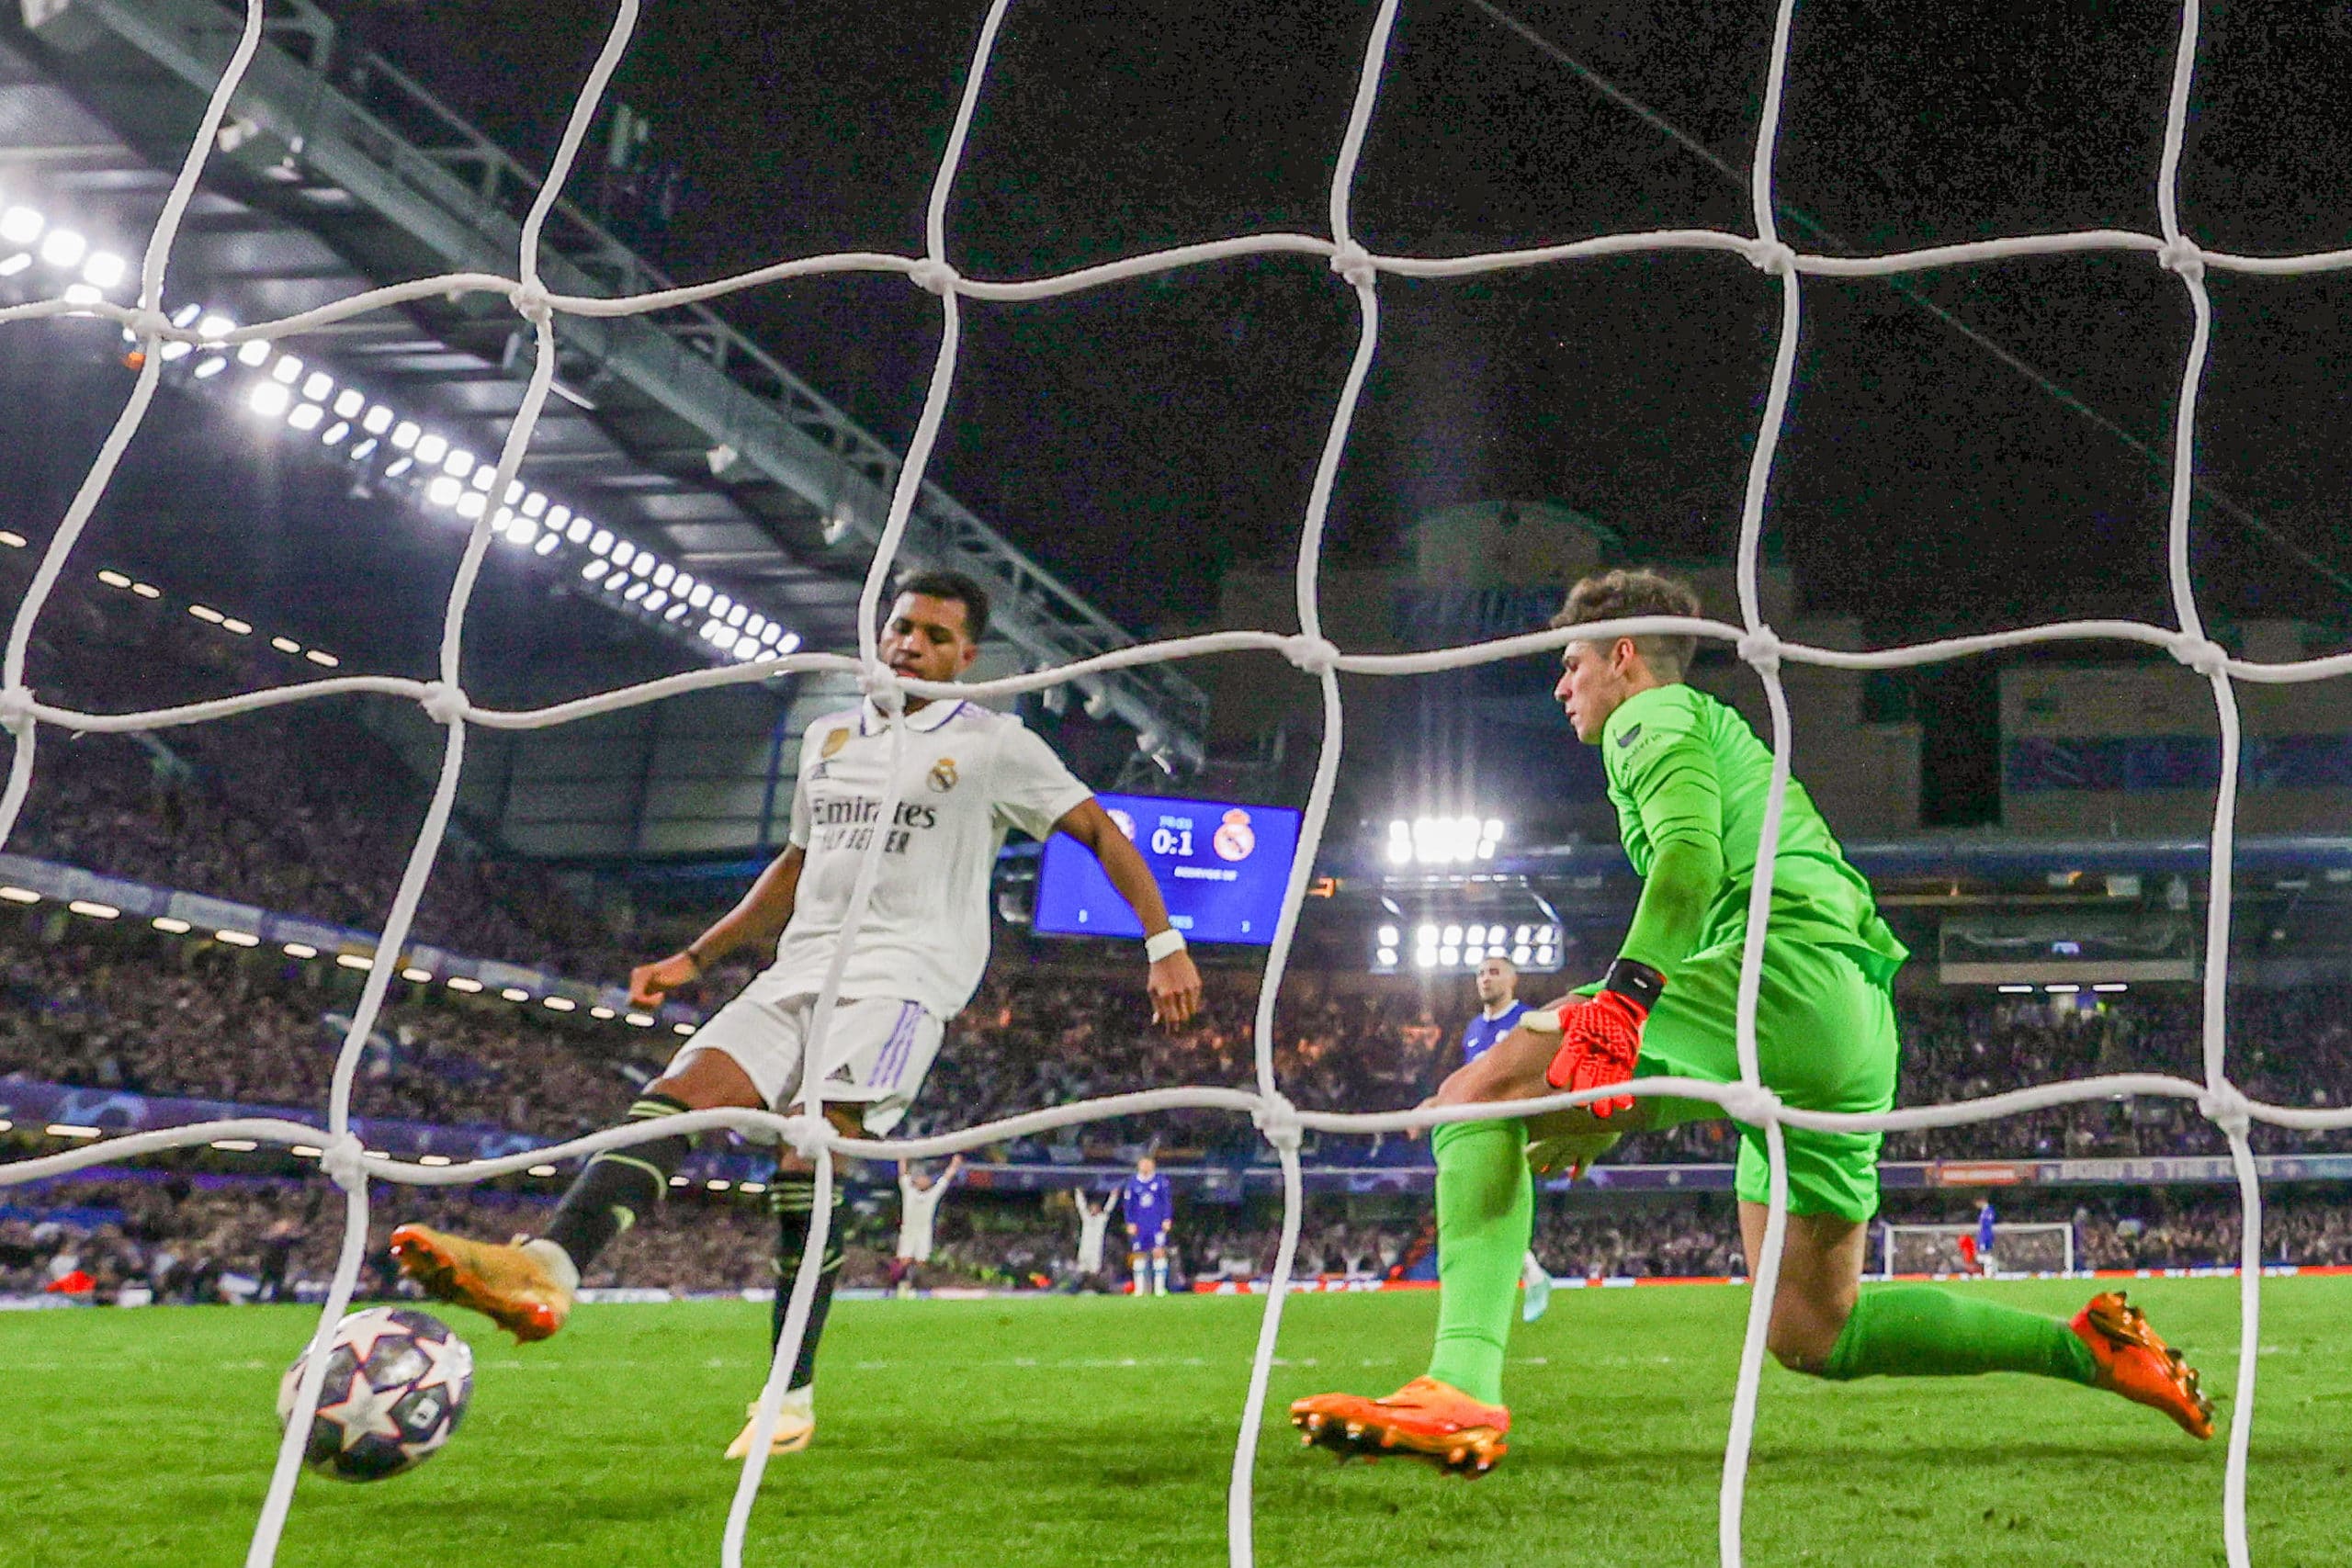 Rodrygo coloca a bola na rede no segundo gol do Real Madrid